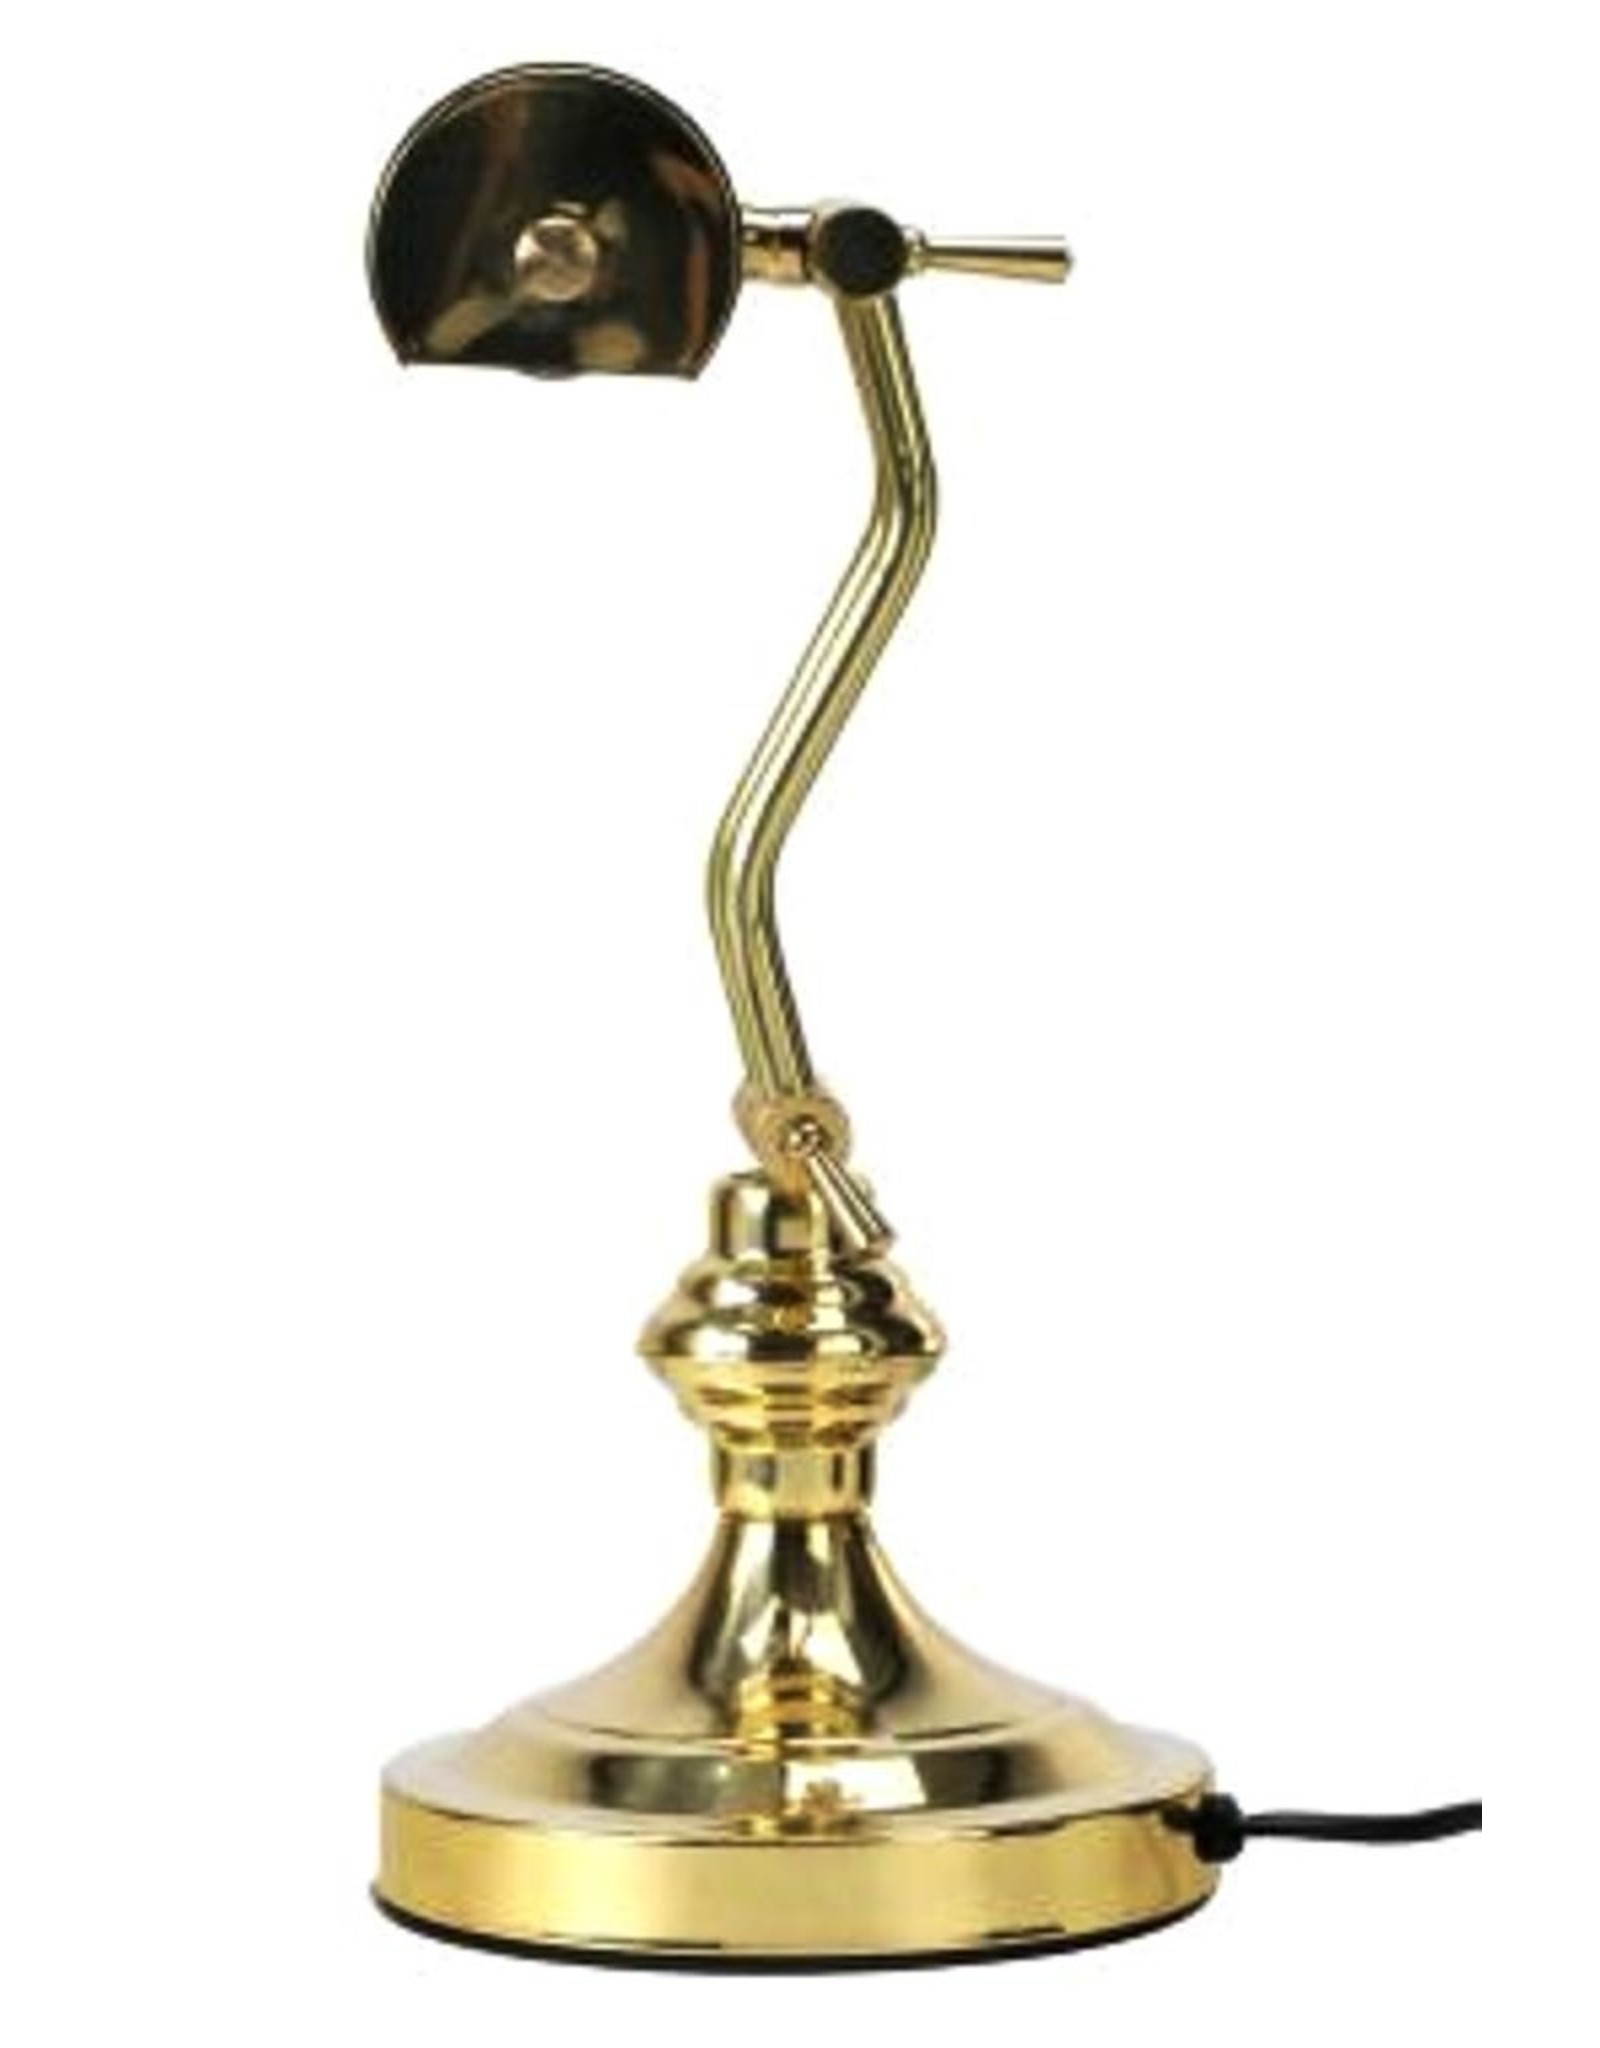 Trukado Miscellaneous - Piano lamp - Desk lamp of solid brass